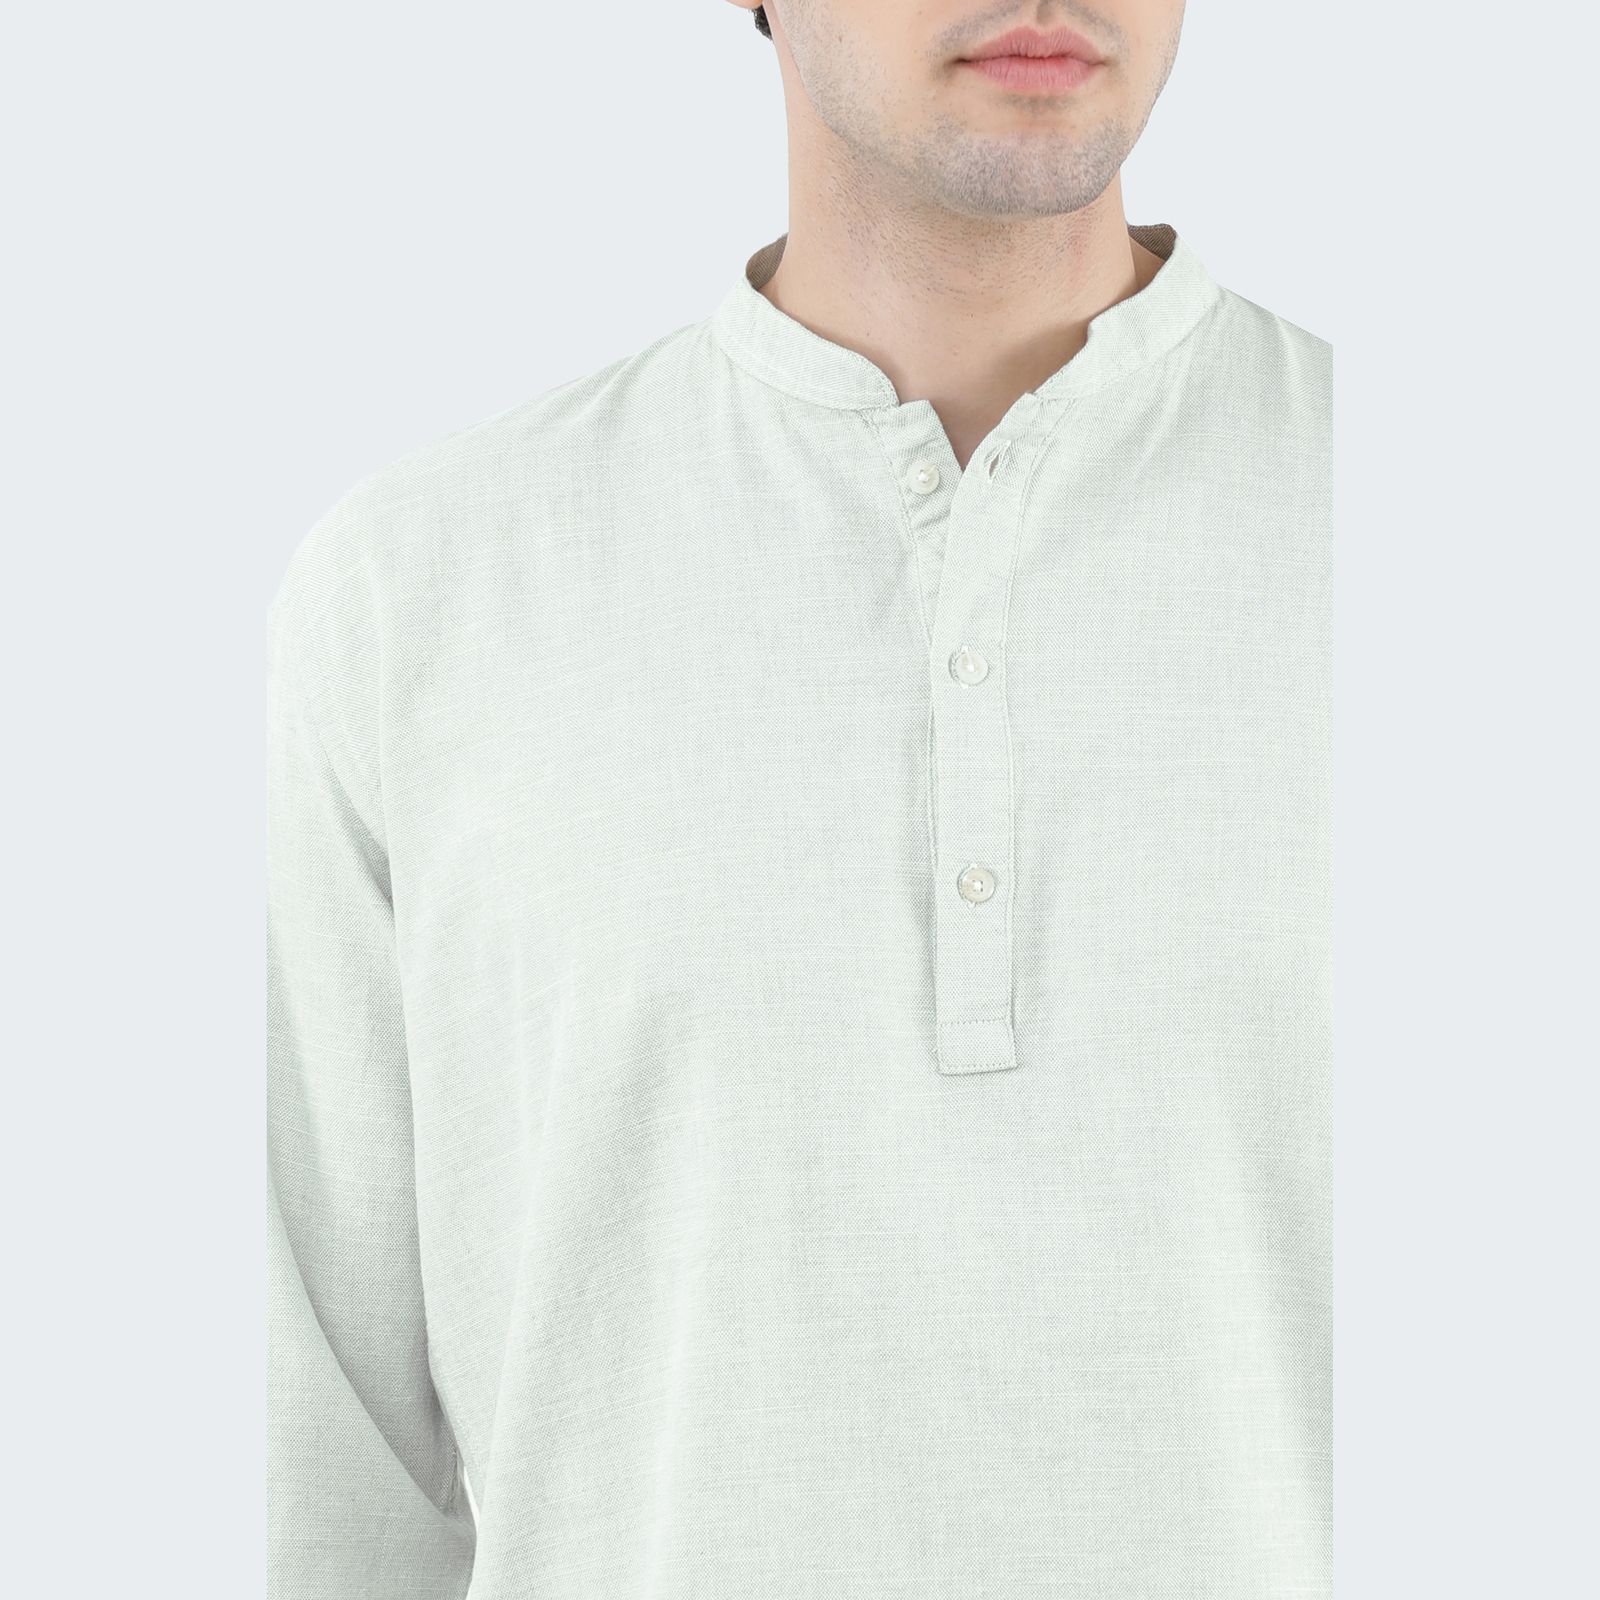 پیراهن آستین بلند مردانه پاتن جامه مدل یقه فرنچ 102721020033556 -  - 5